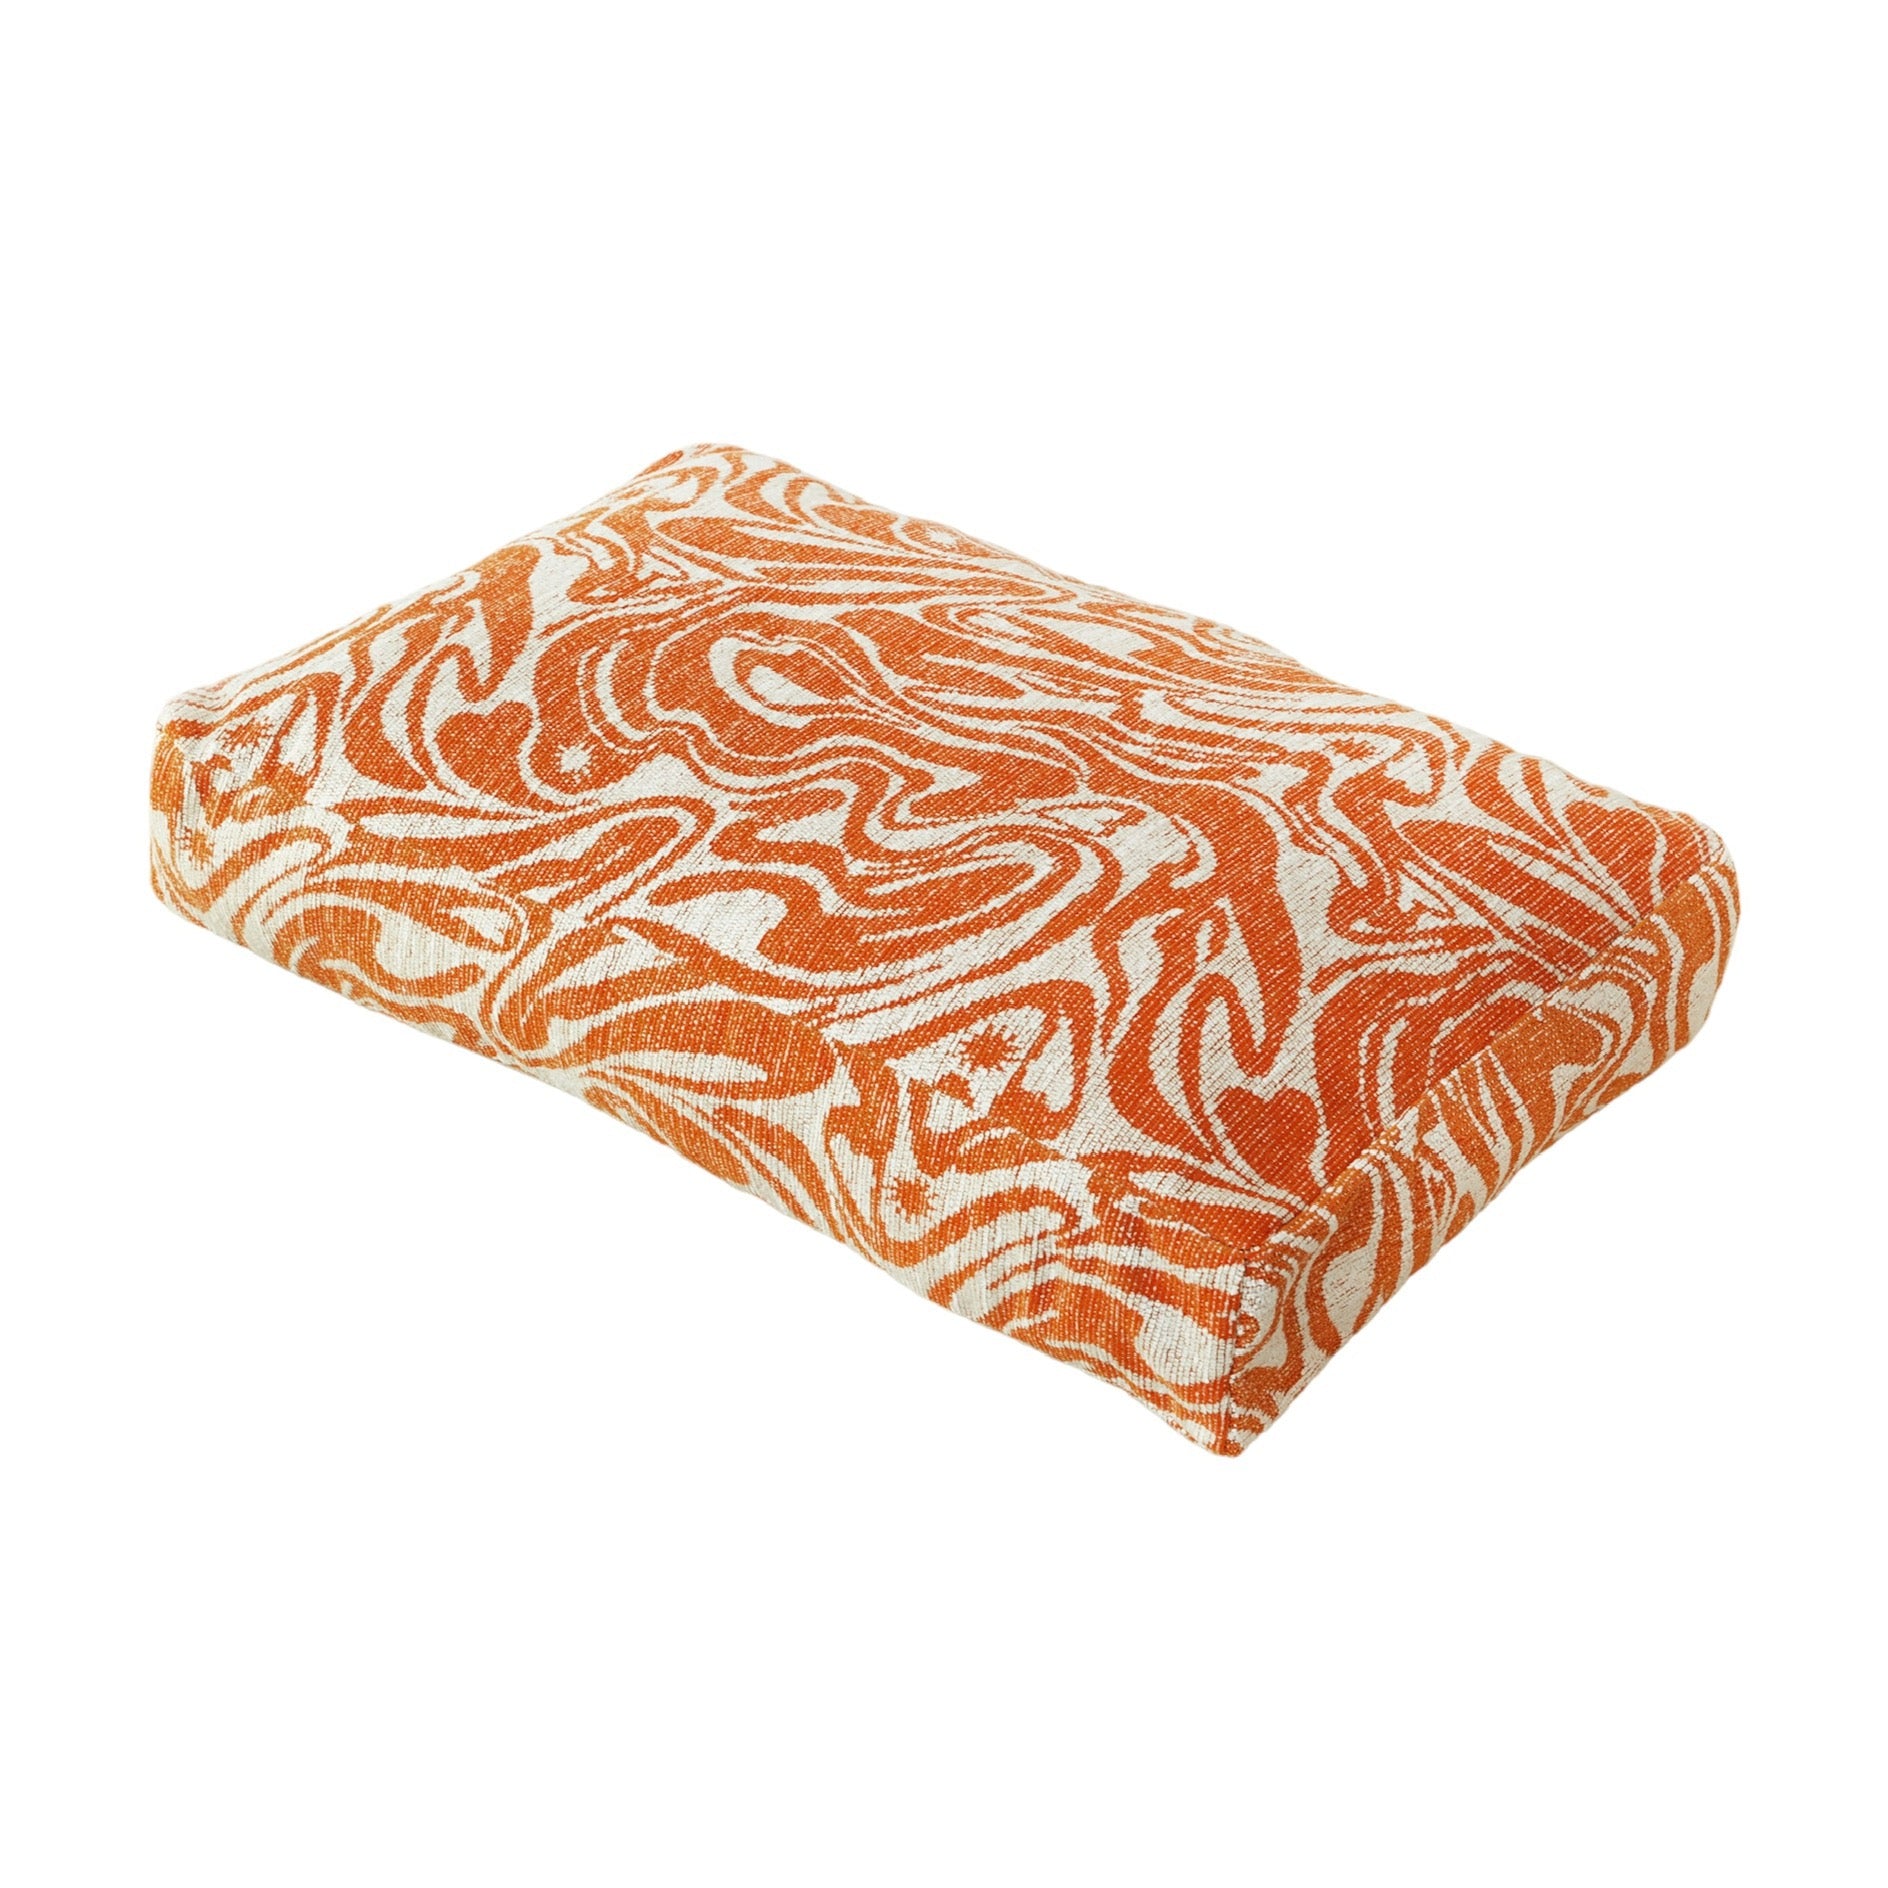 Swirl Dog Bed - Orange/Beige